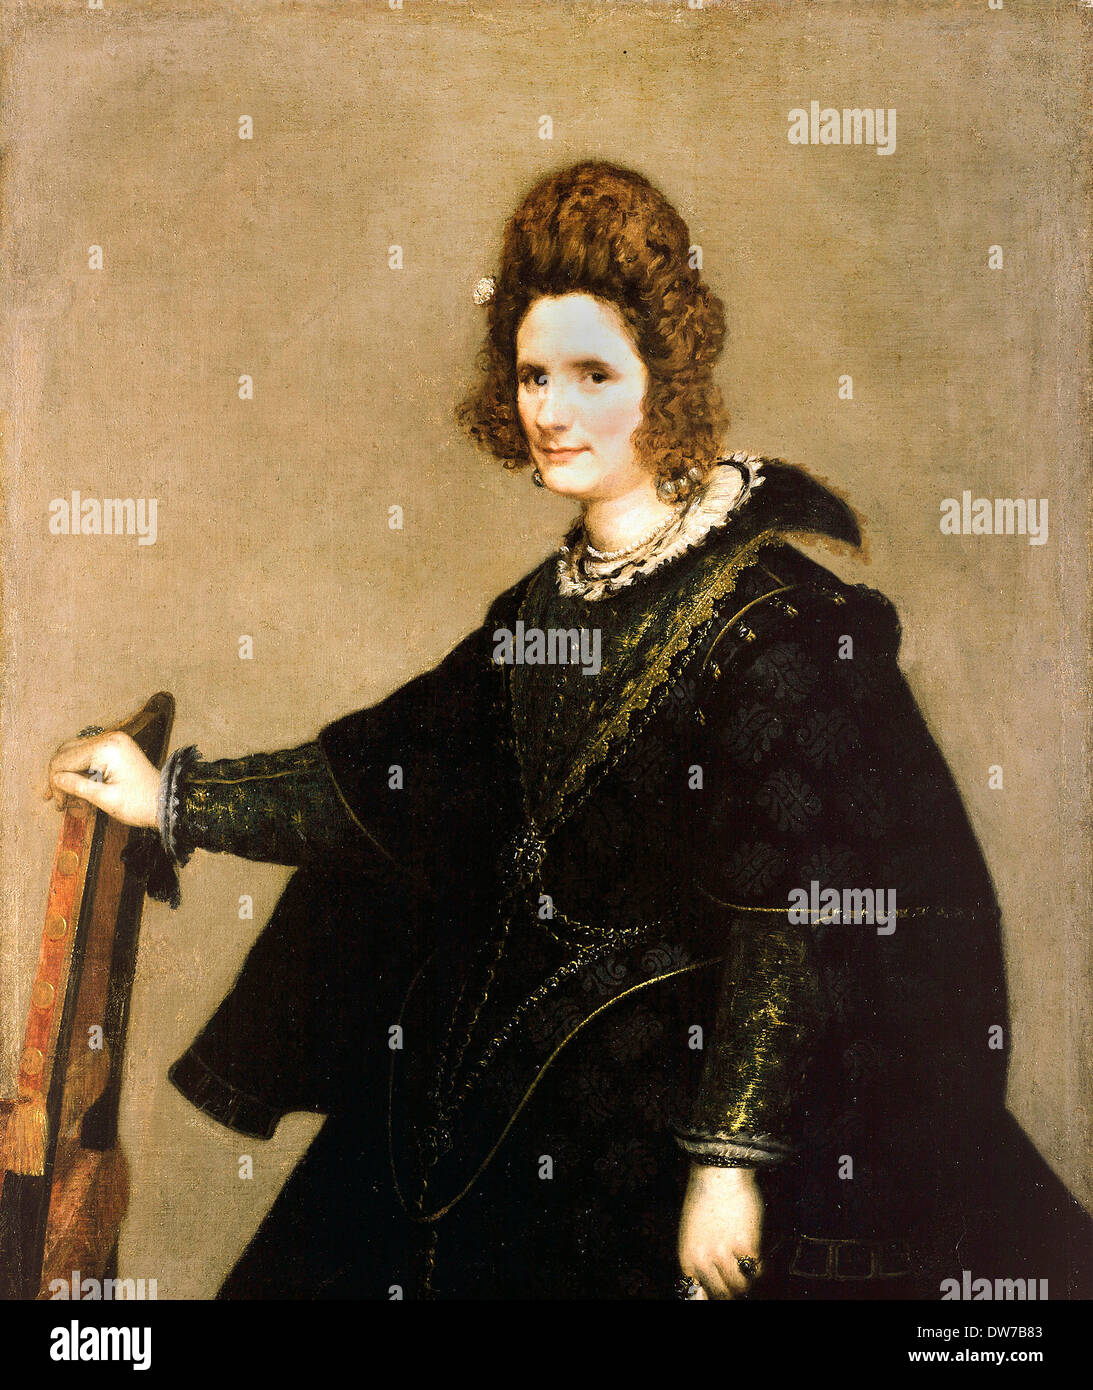 Diego Rodríguez de Silva y Velázquez, Bildnis einer Dame. Ca. 1630. Öl auf Leinwand. Gemäldegalerie, Berlin, Deutschland. Stockfoto